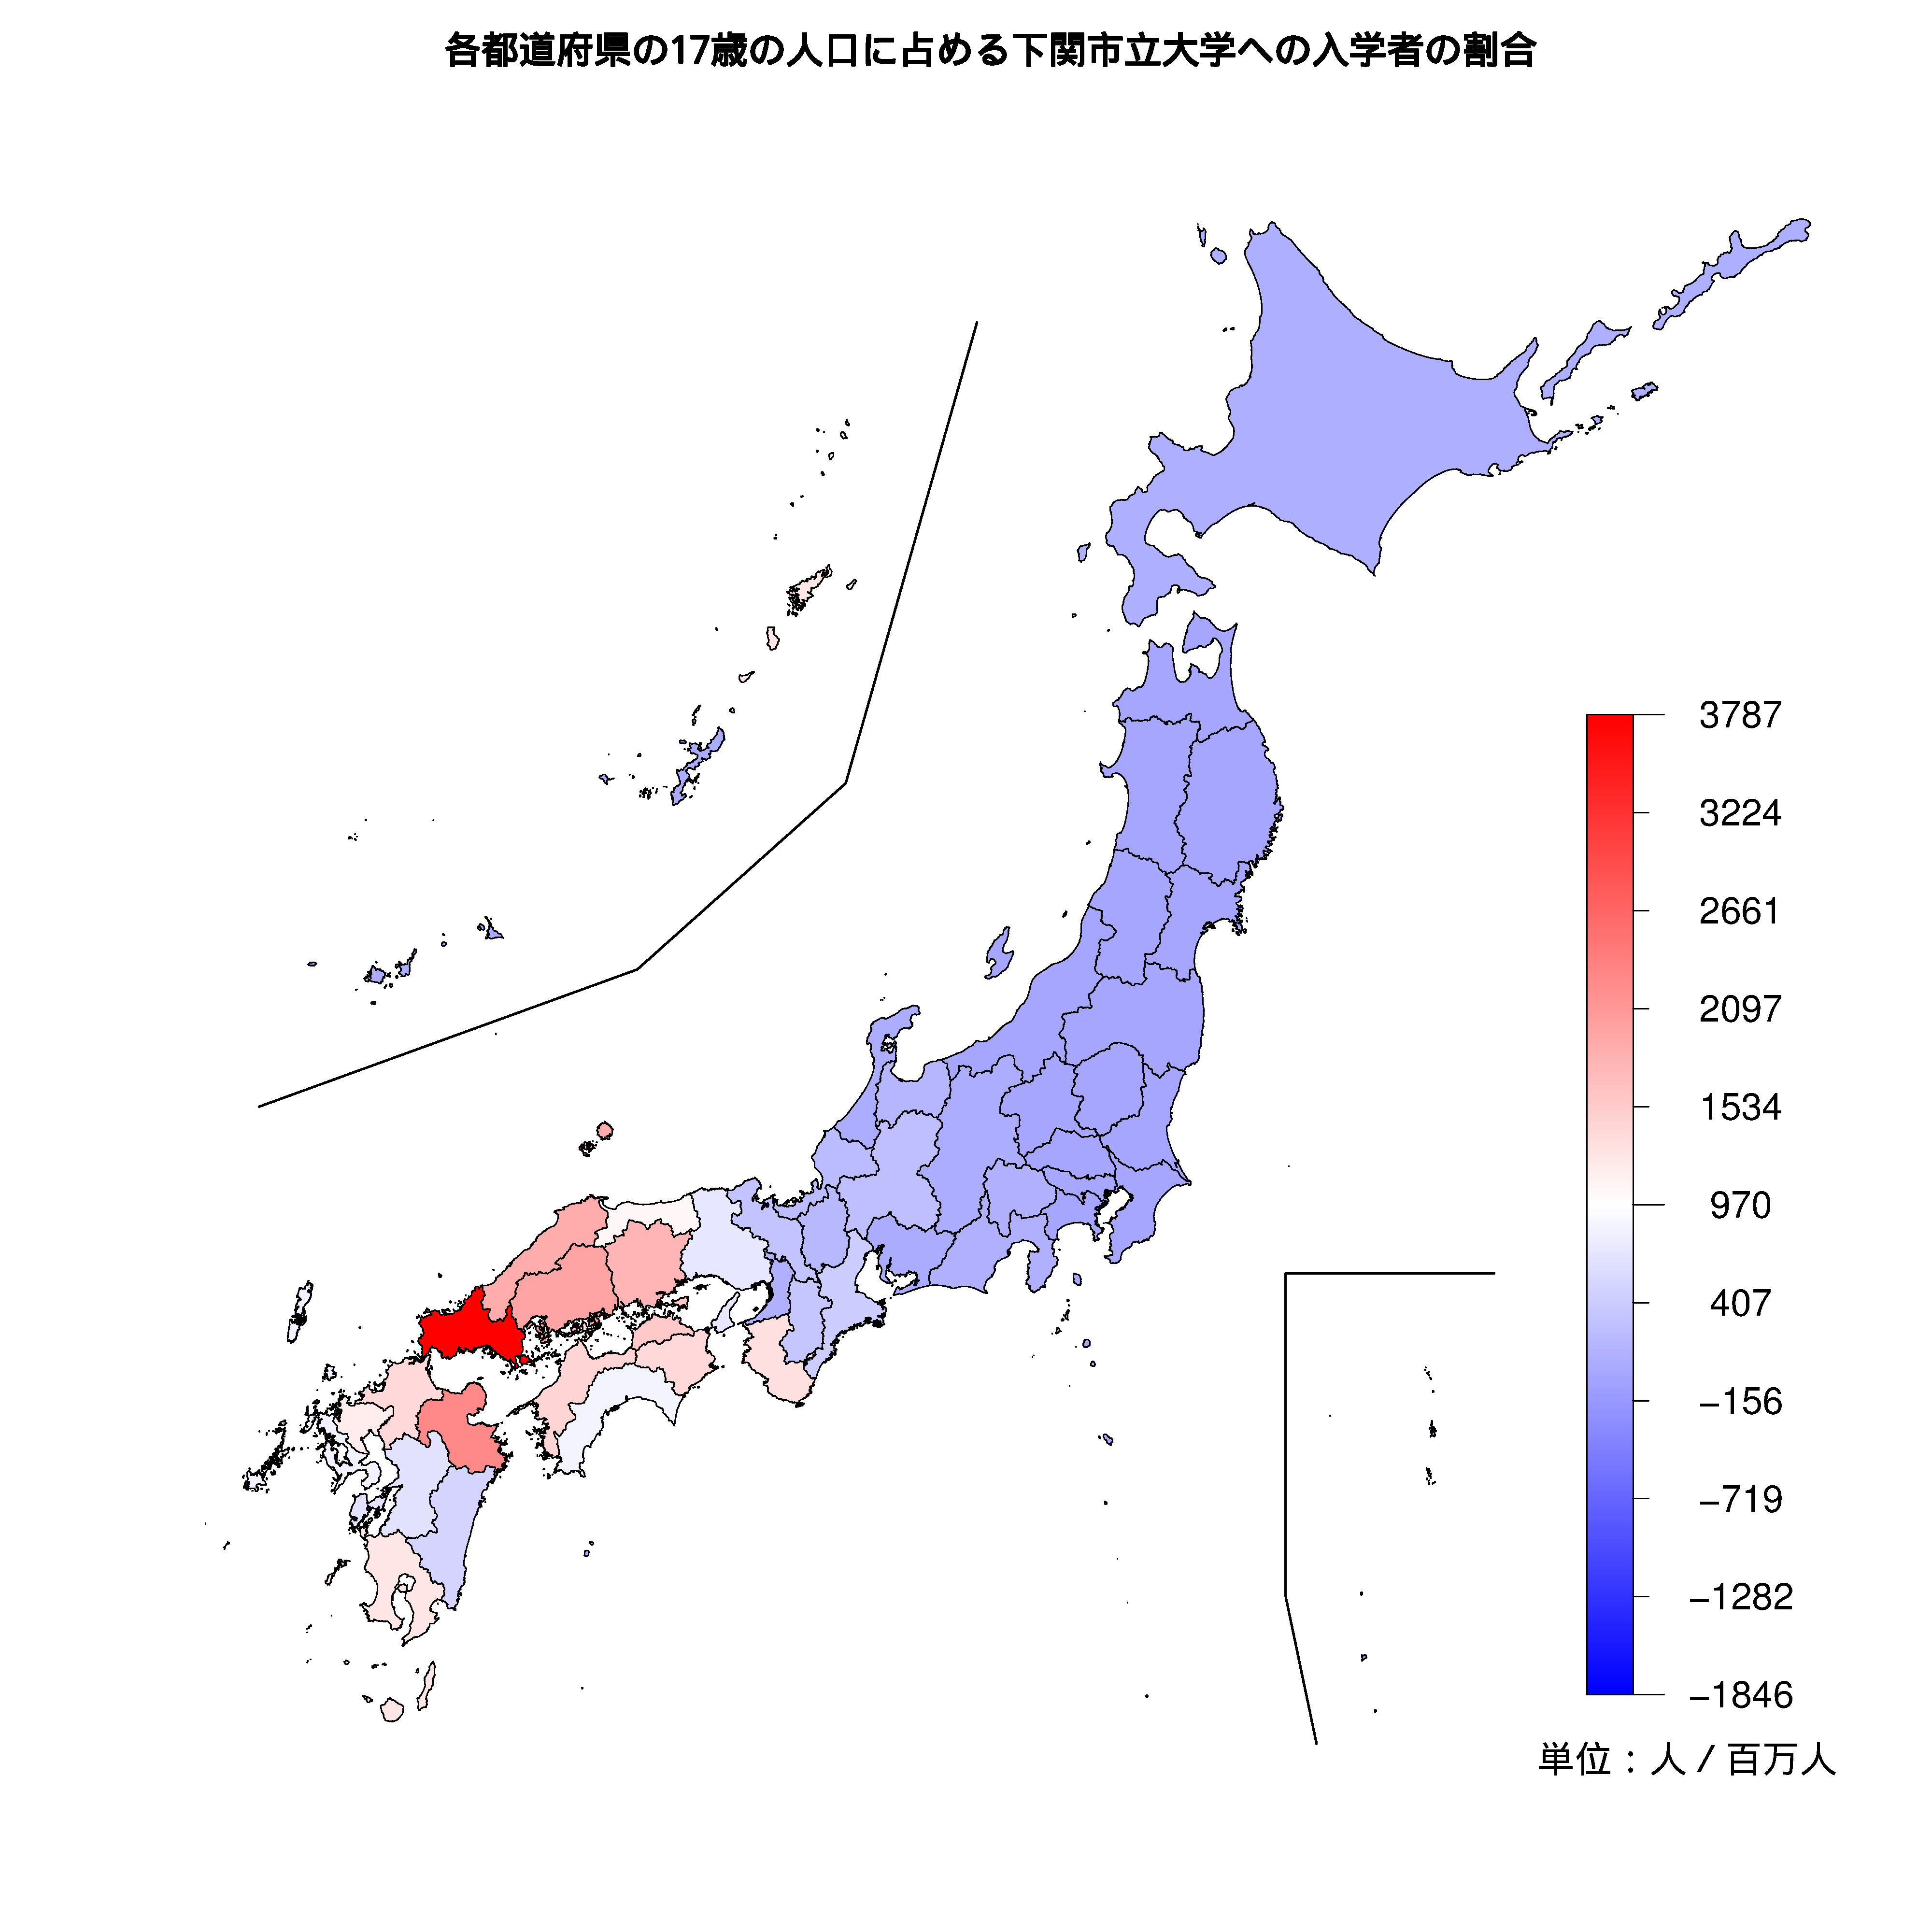 下関市立大学への入学者が多い都道府県の色分け地図